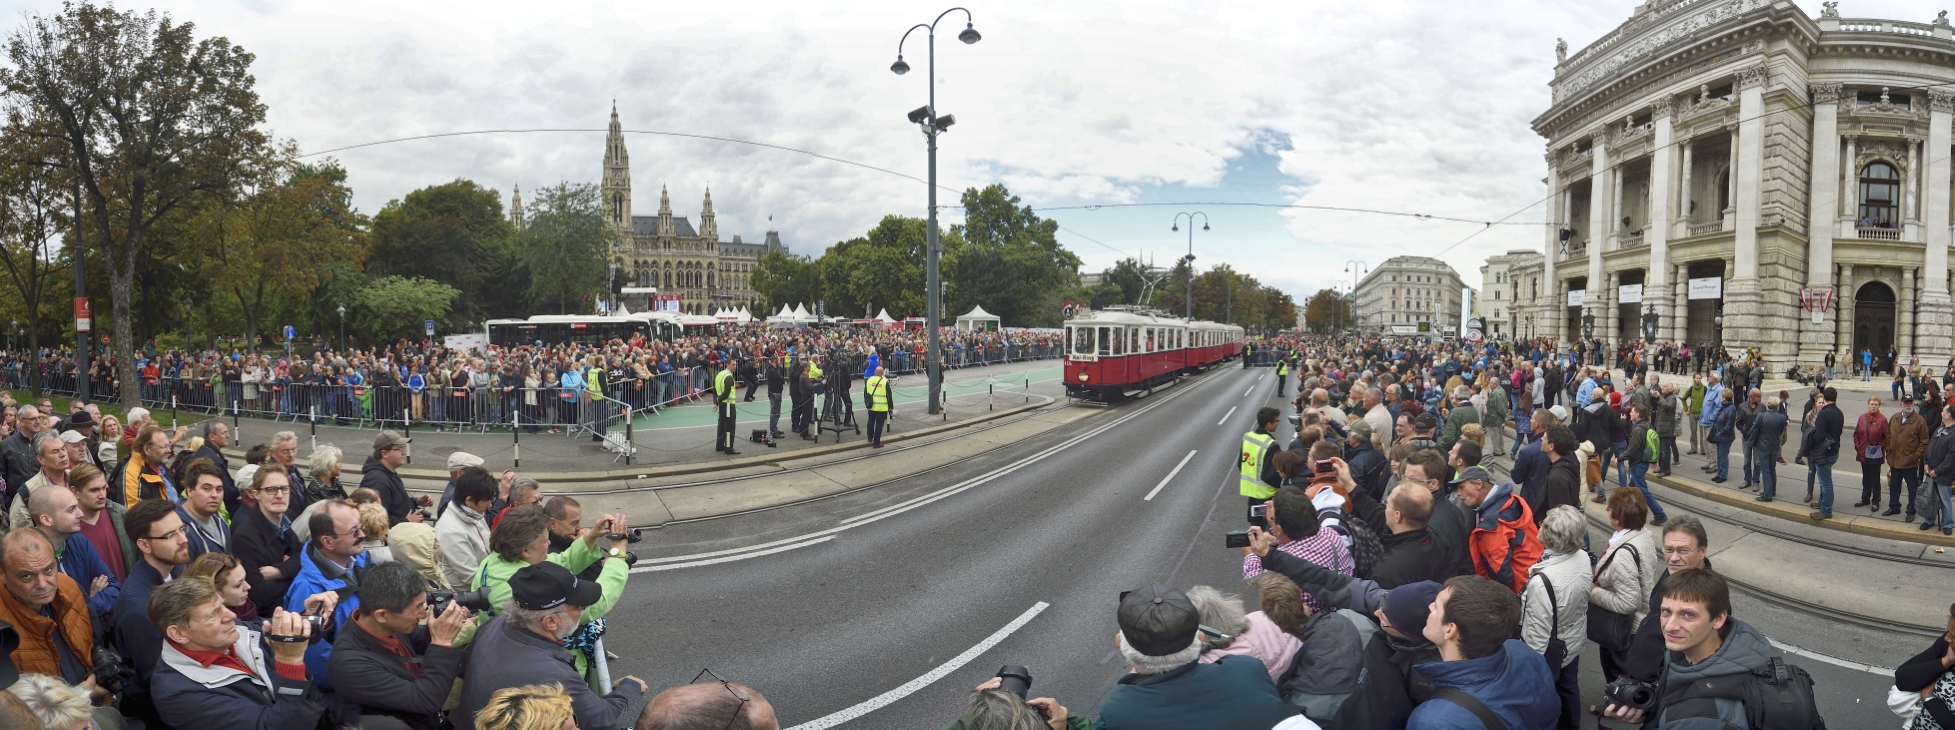 Fest anlässlich des 150-jährigen Jubiläums der Wiener Straßenbahn am Rathausplatz mit zahlreichen Attraktionen und einem Corso mit historischen Fahrzeugen der Wiener Linien.